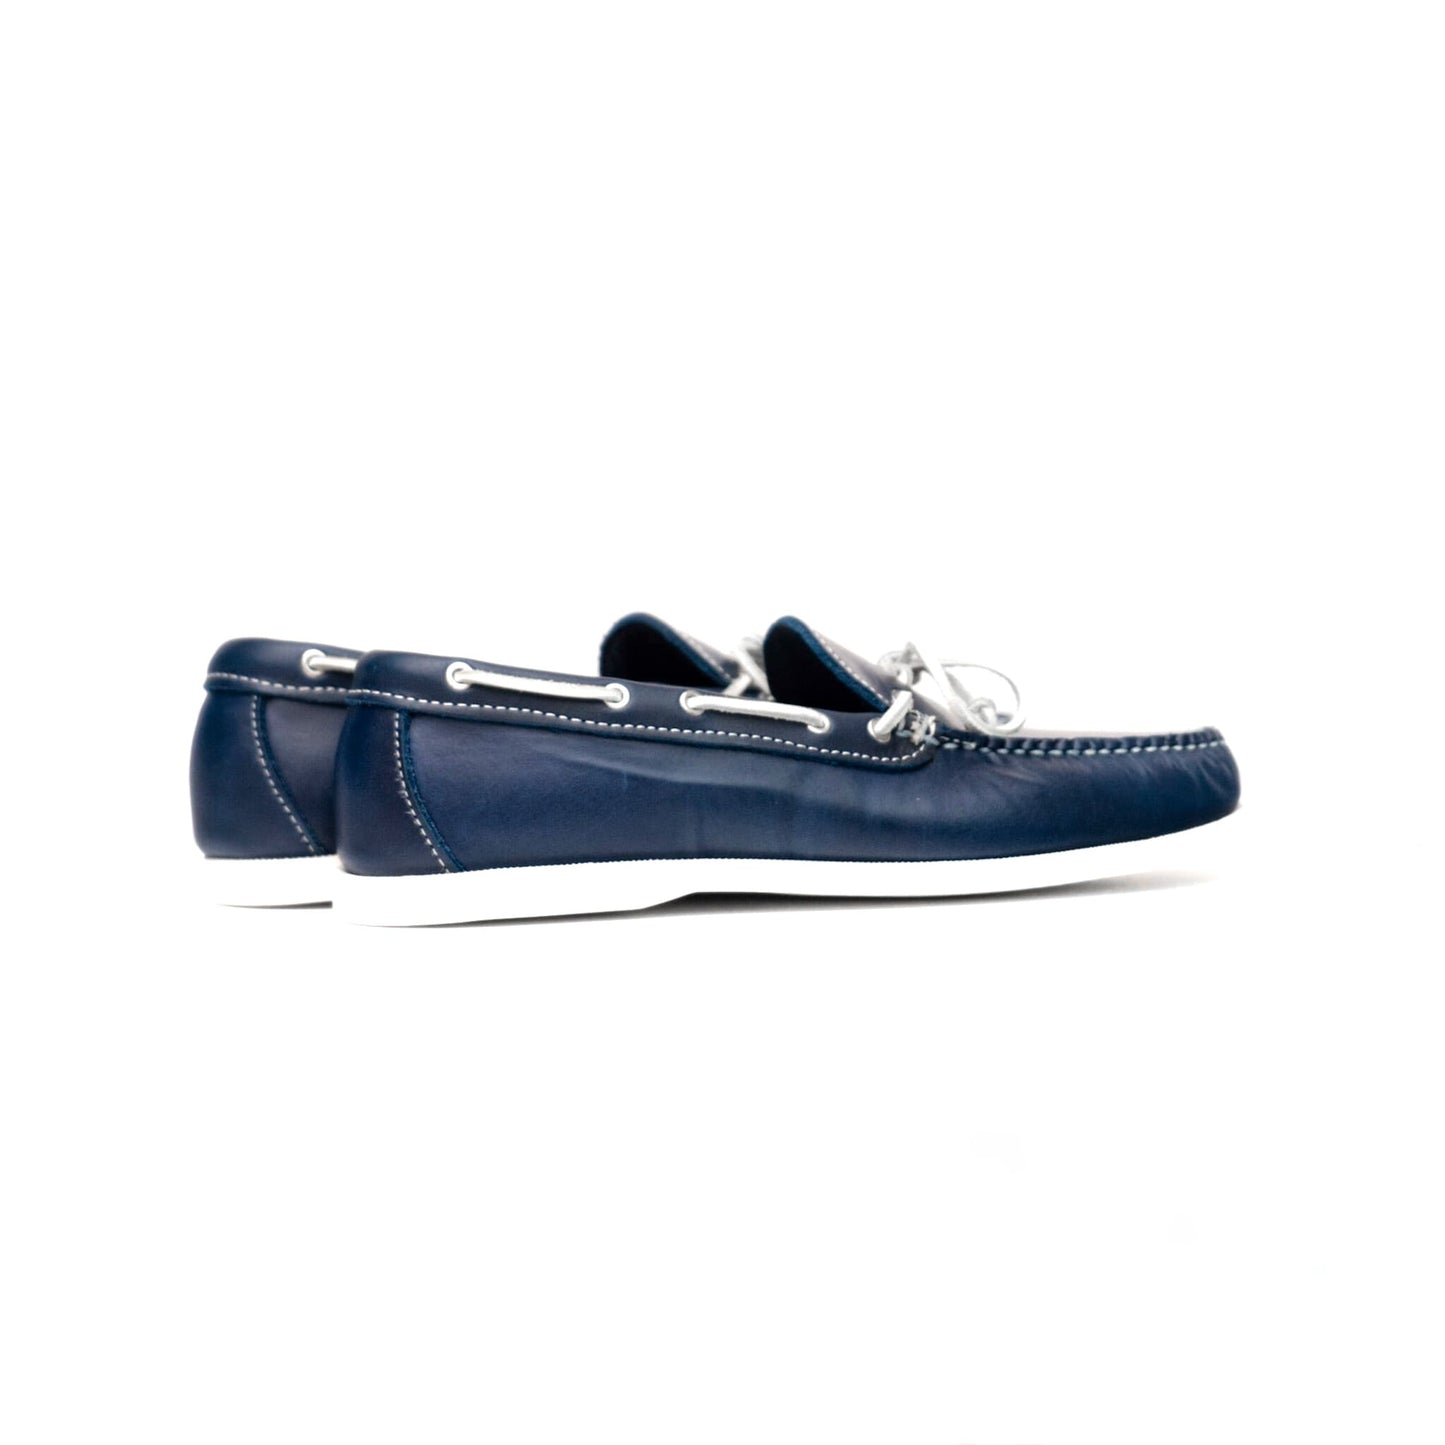 Mocasín Dexter USA - Cuero engrasado azul marino - Suela de barco blanca 